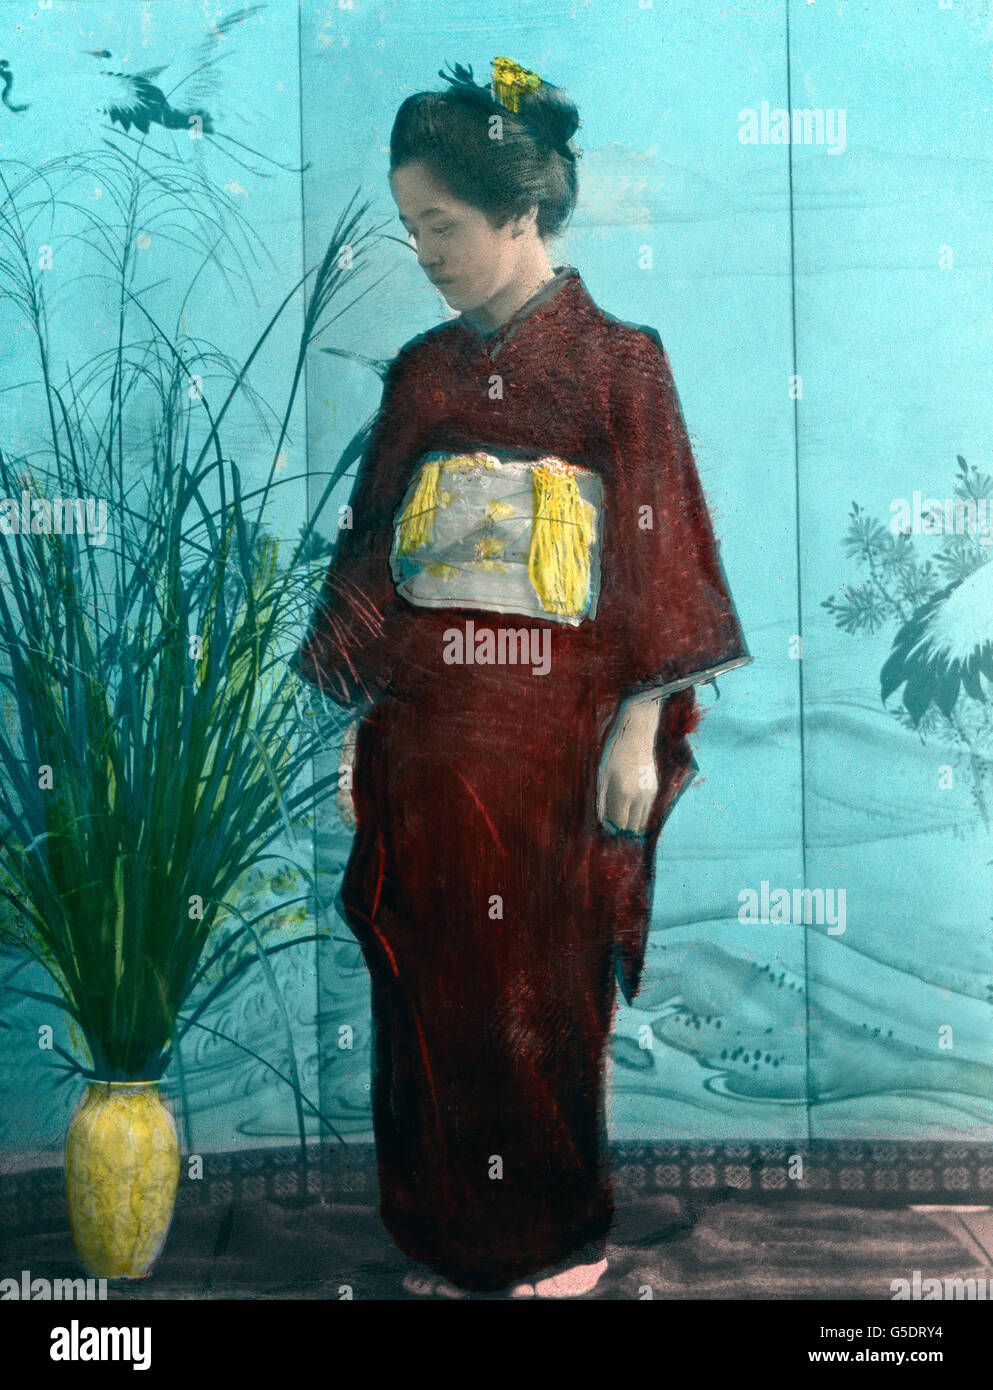 Ein junges Mädchen aus Japon, bekleidet mit dem l kimono. L'Asie, Japon, Asie, voyage, années 10, 20, 20e siècle, archive, Carl Simon, histoire, historique, Japonais, jeune fille, adolescente, de l'habillement, traditionnelle, de la mode, pose, pose, portrait, lame de verre colorée à la main Banque D'Images